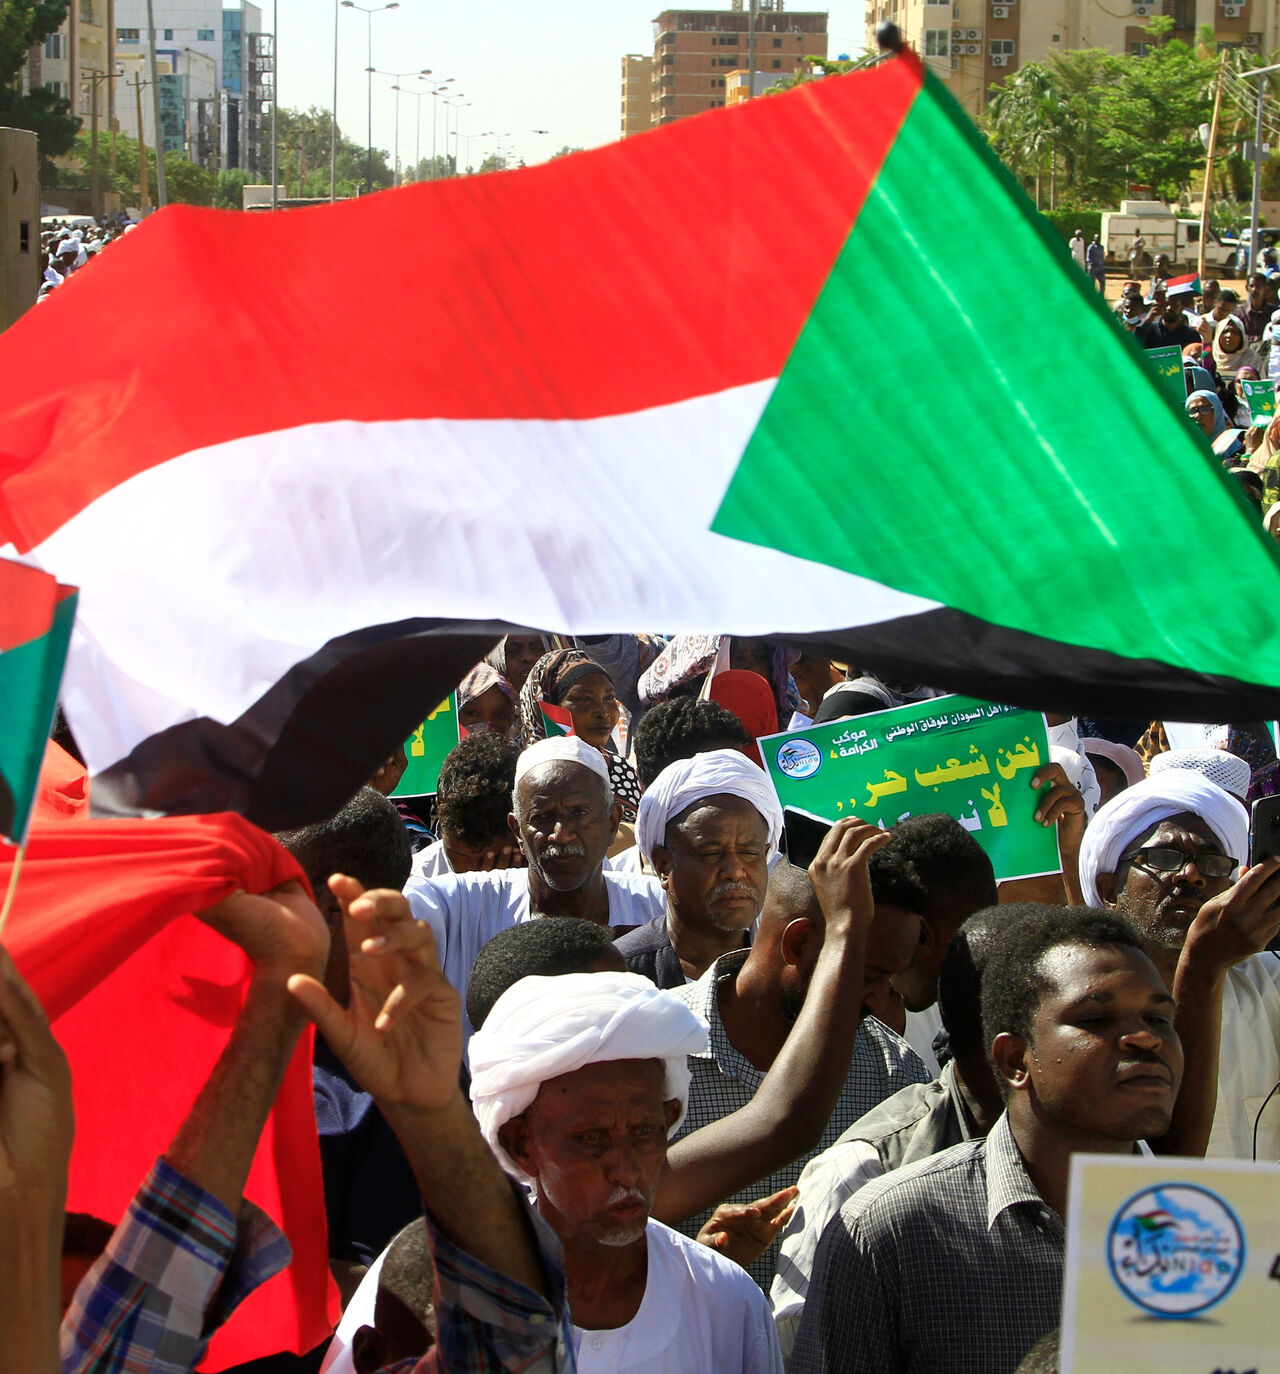 Sudan cover image